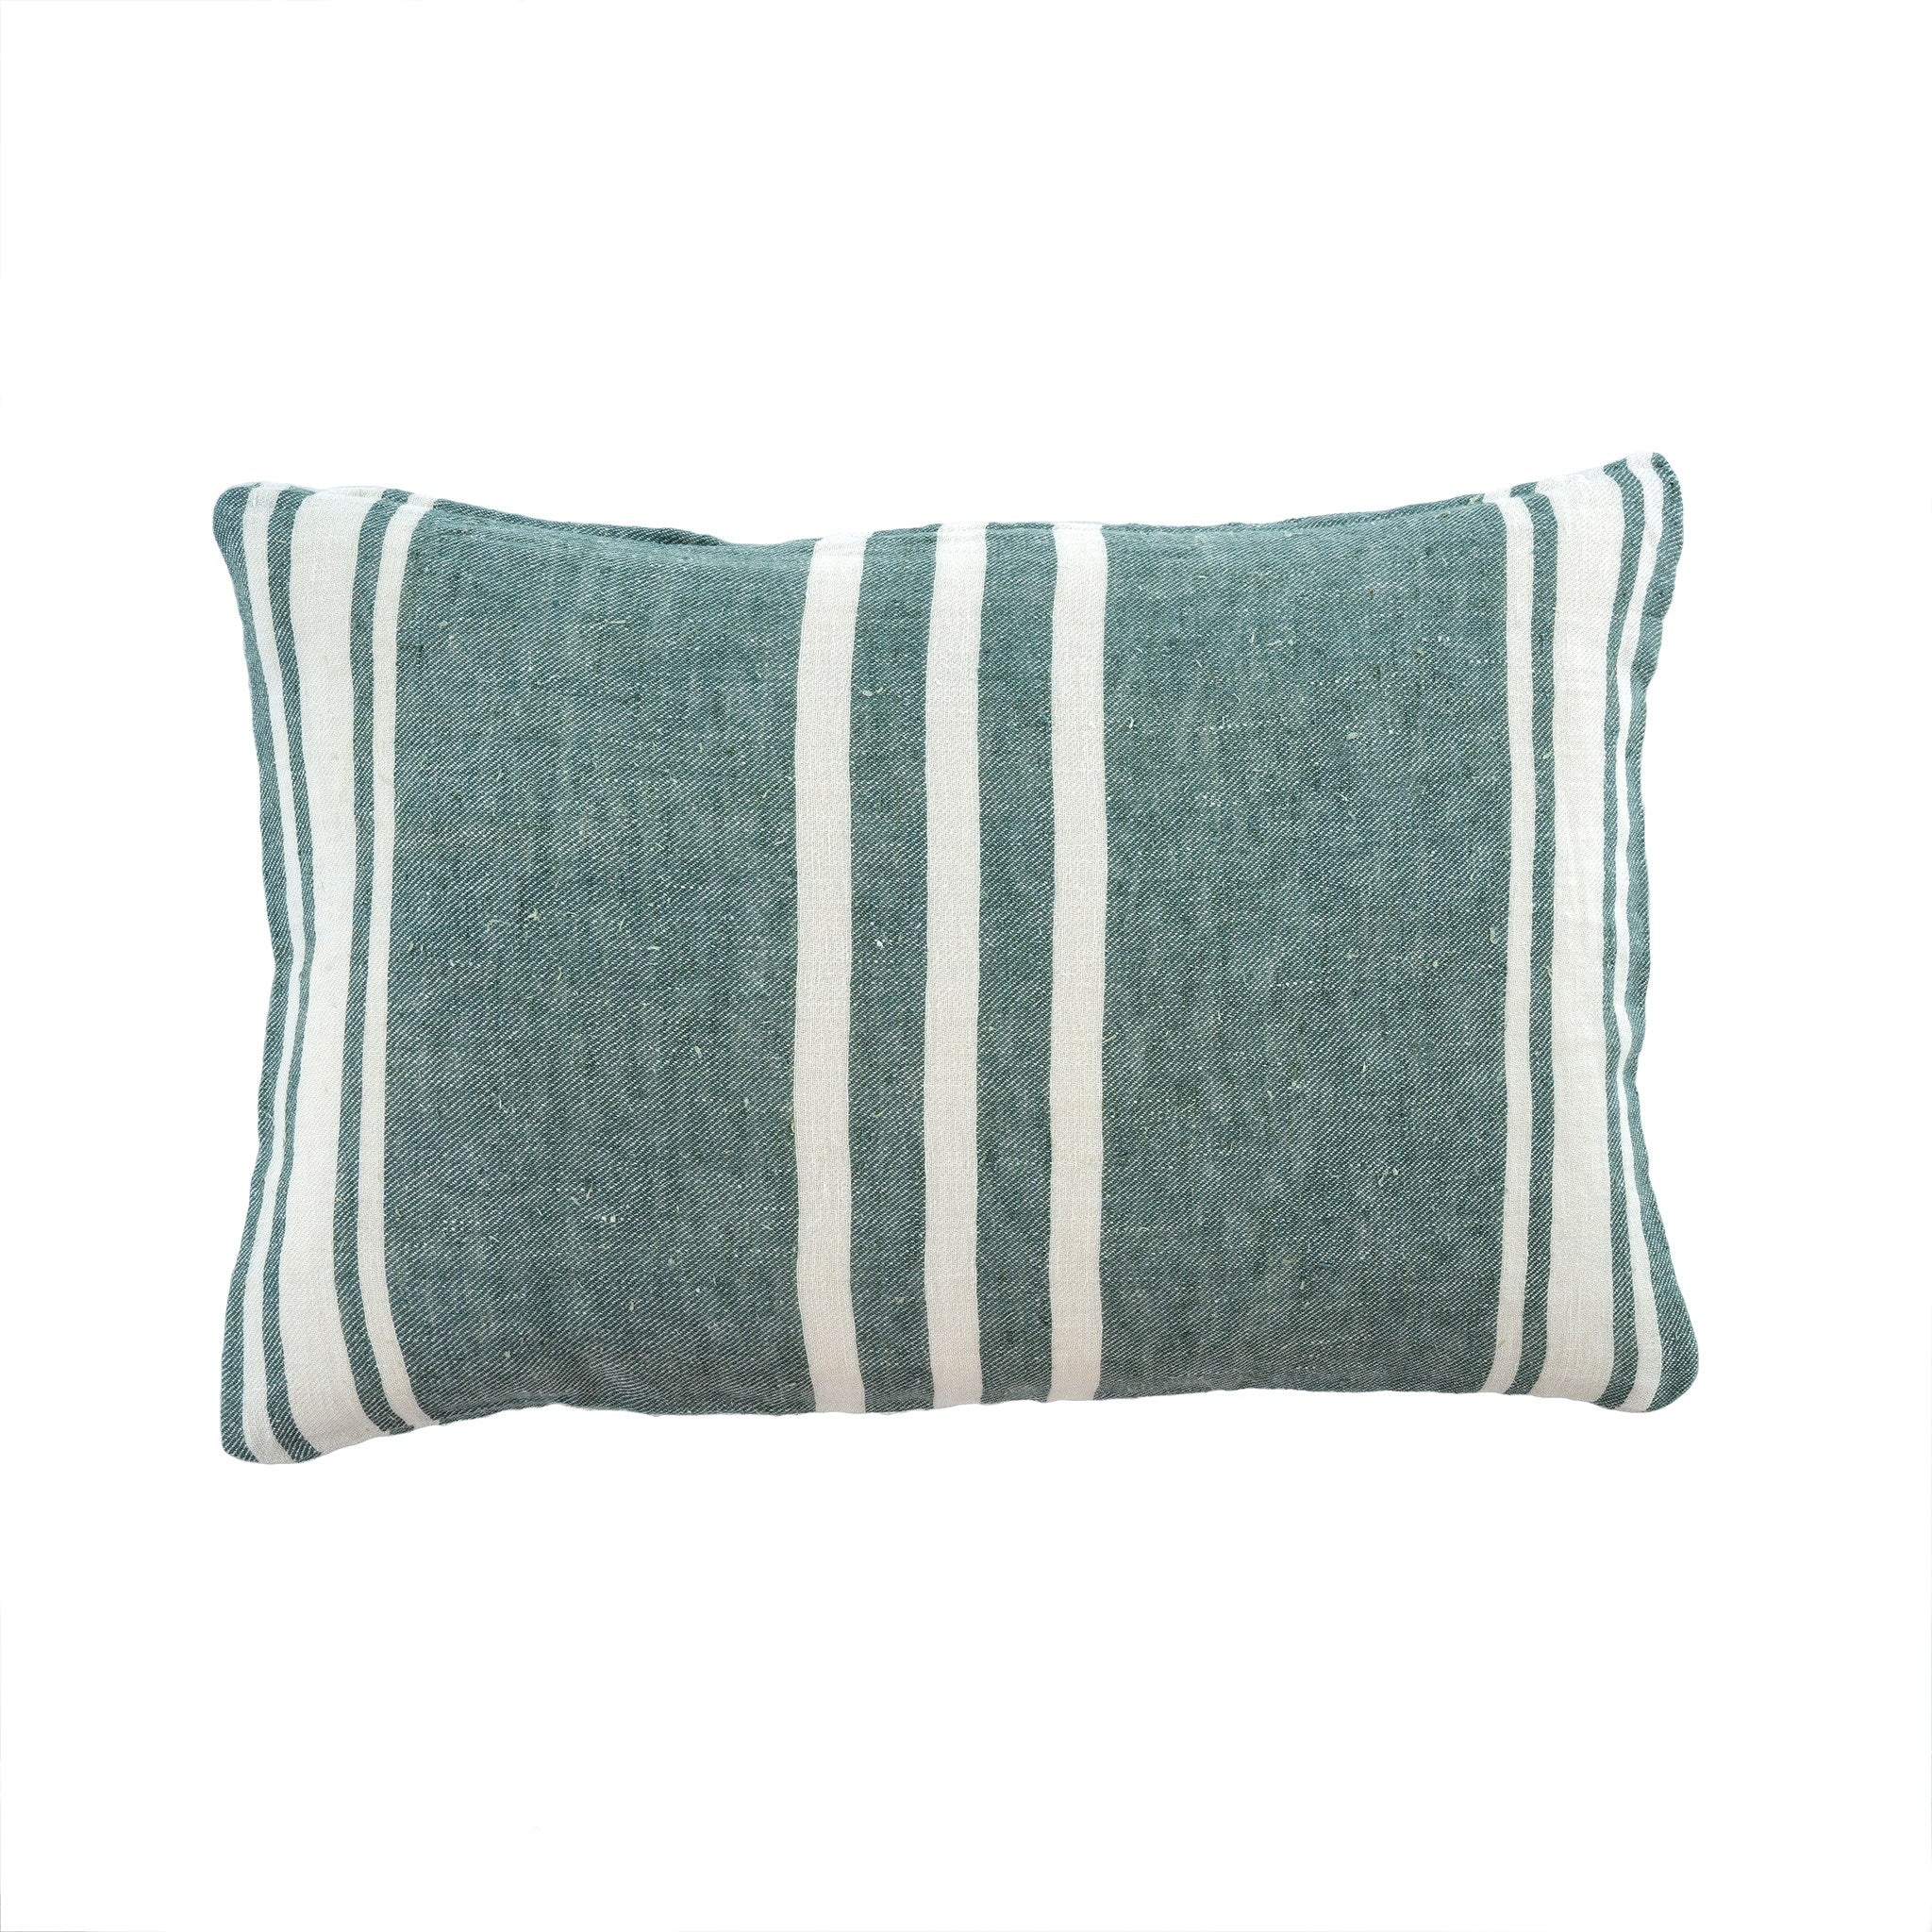 Surfside Linen Pillows- 2 Colors